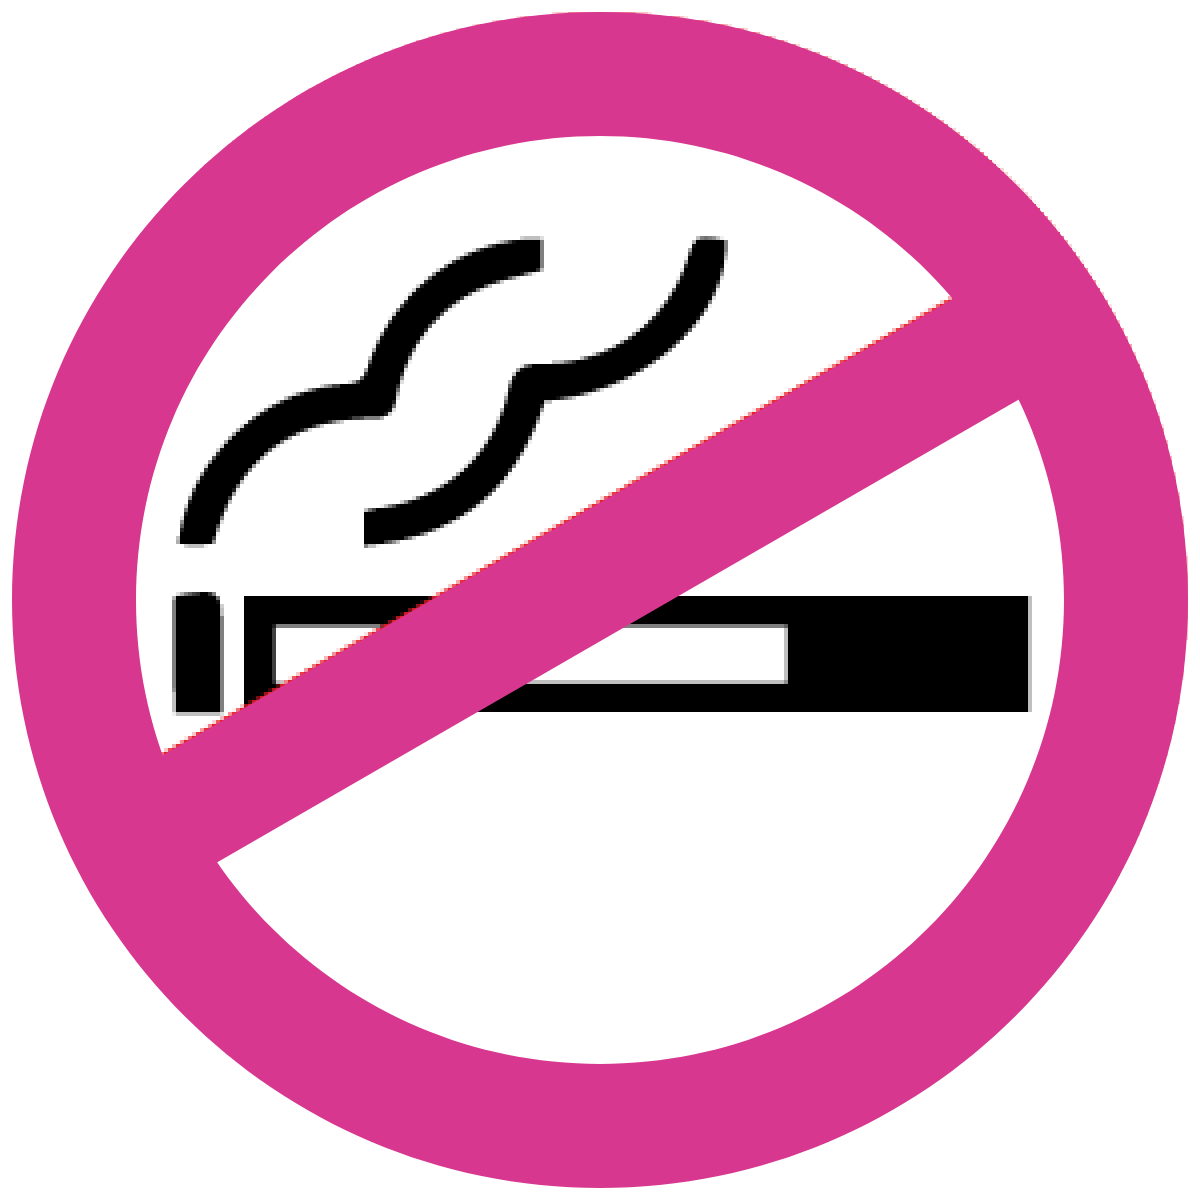 歩きタバコ 禁止。